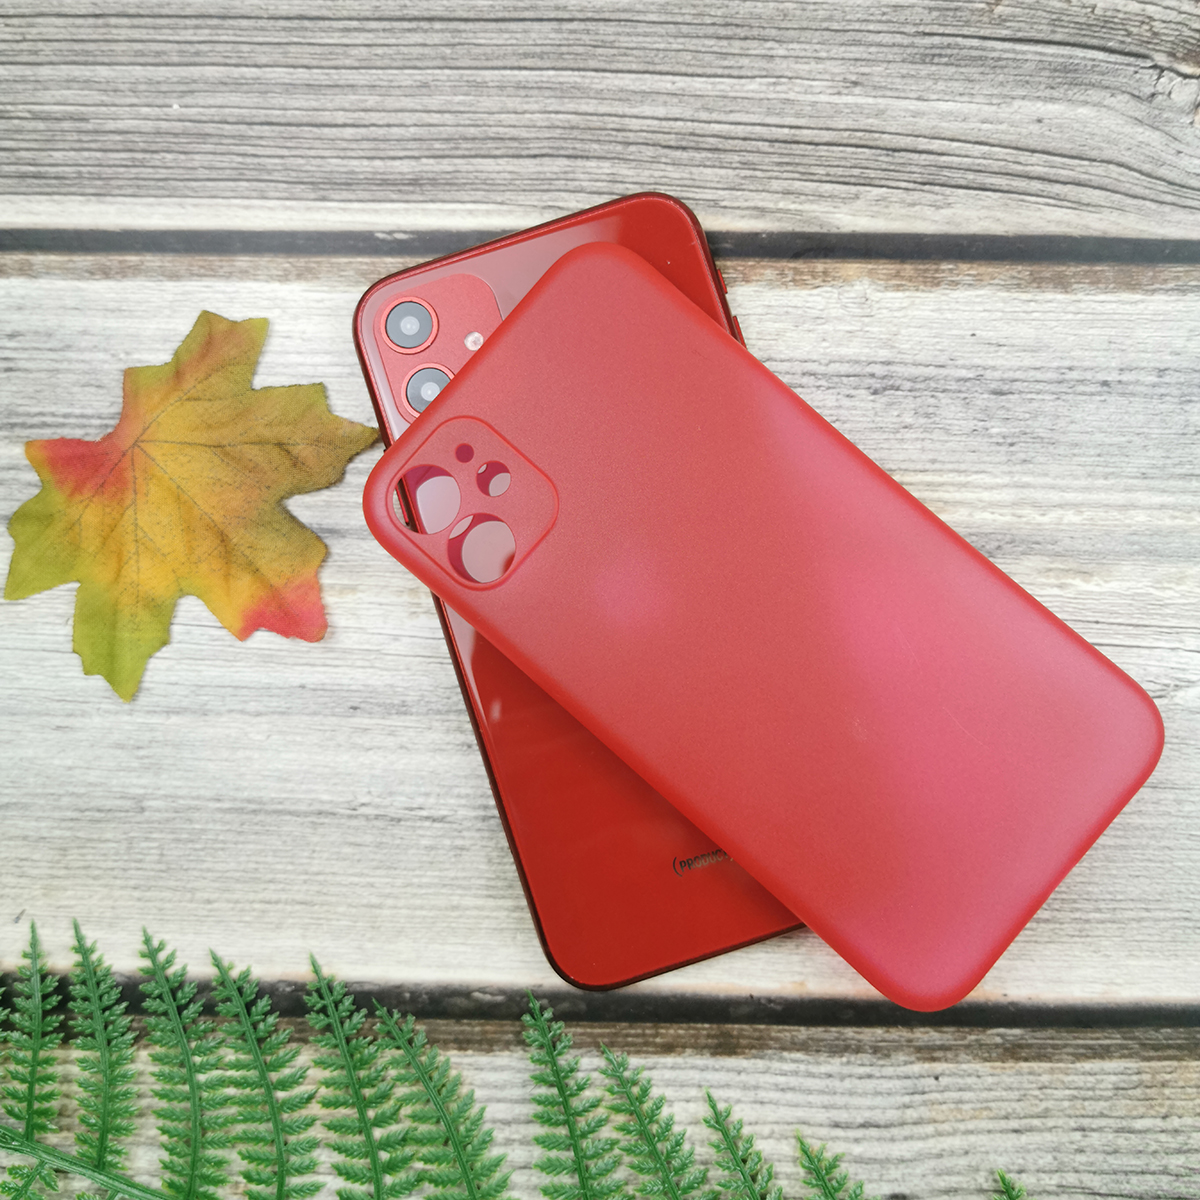 313096 รุ่น iPhone 6 / 6s สีแดง กึ่งโปร่ง
